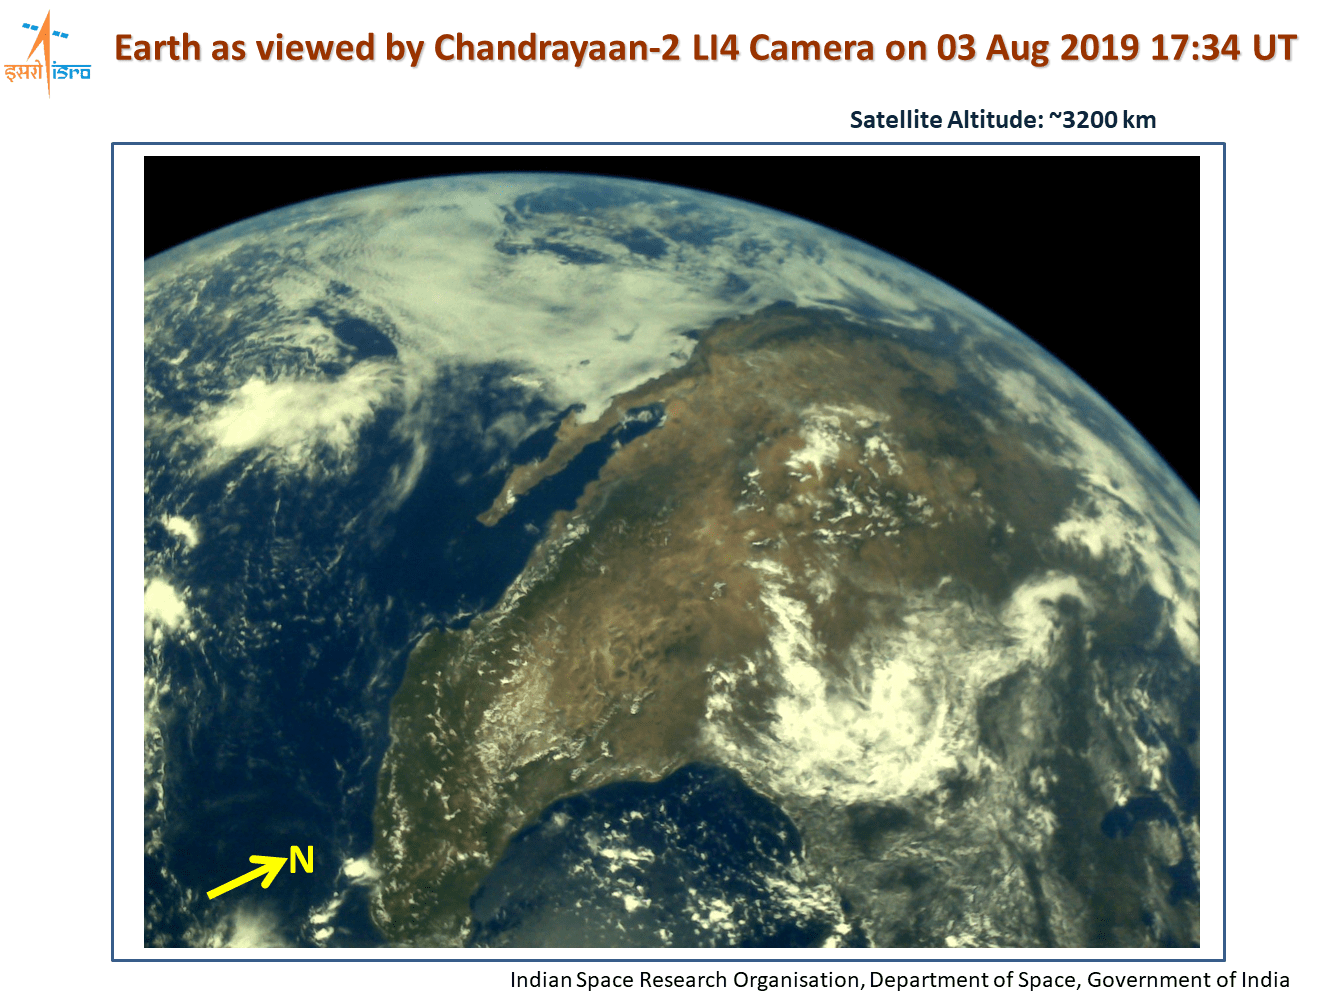 Снимок Земли с высоты 3200 км от 3 августа 2019